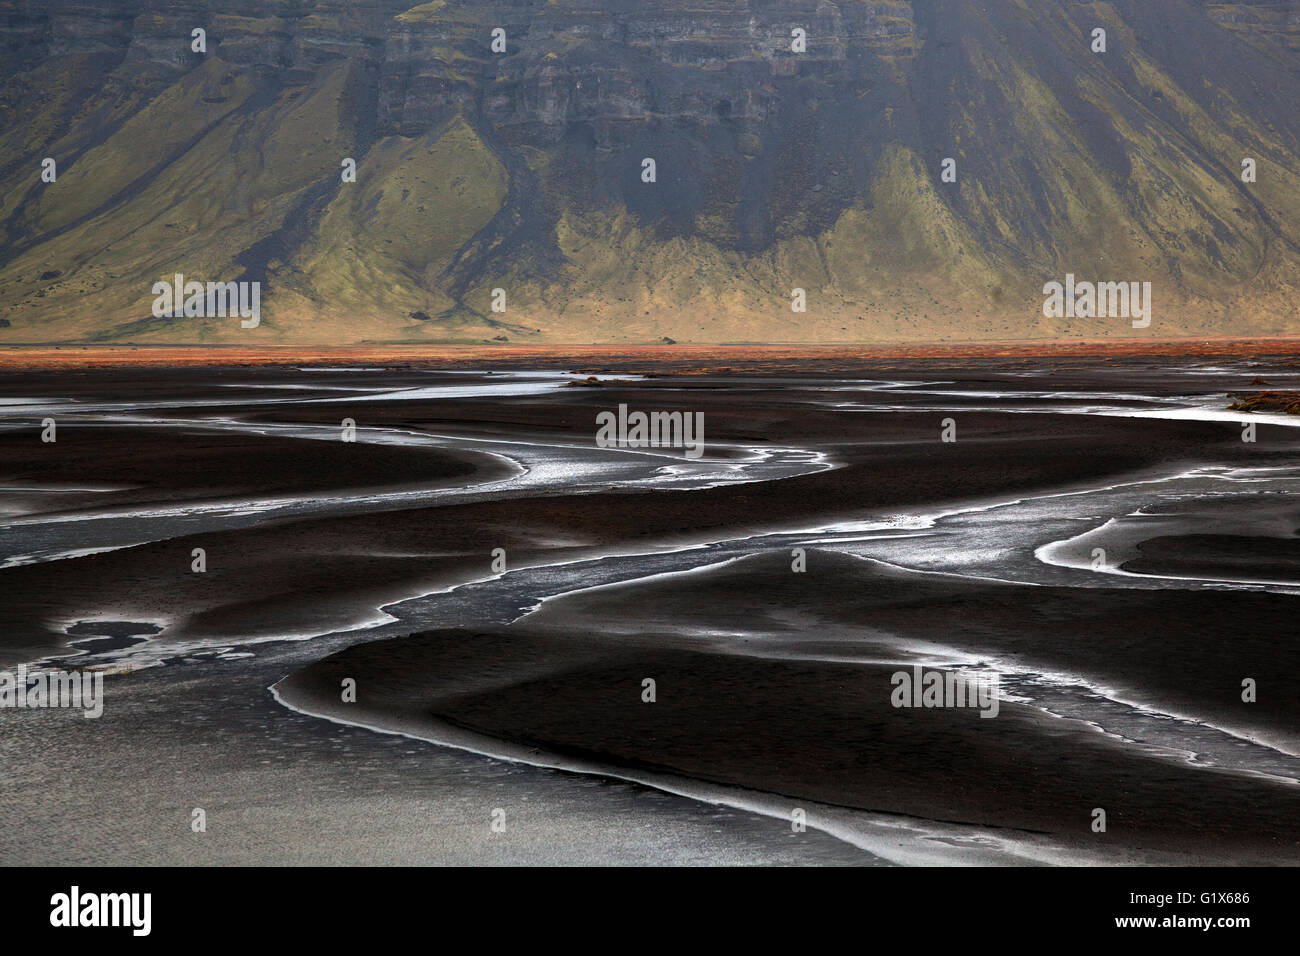 Landschaft mit Gewässer durch vulkanischen Sand, Nupsstadur oder Núpsstaður, Region Süd, Island Stockfoto